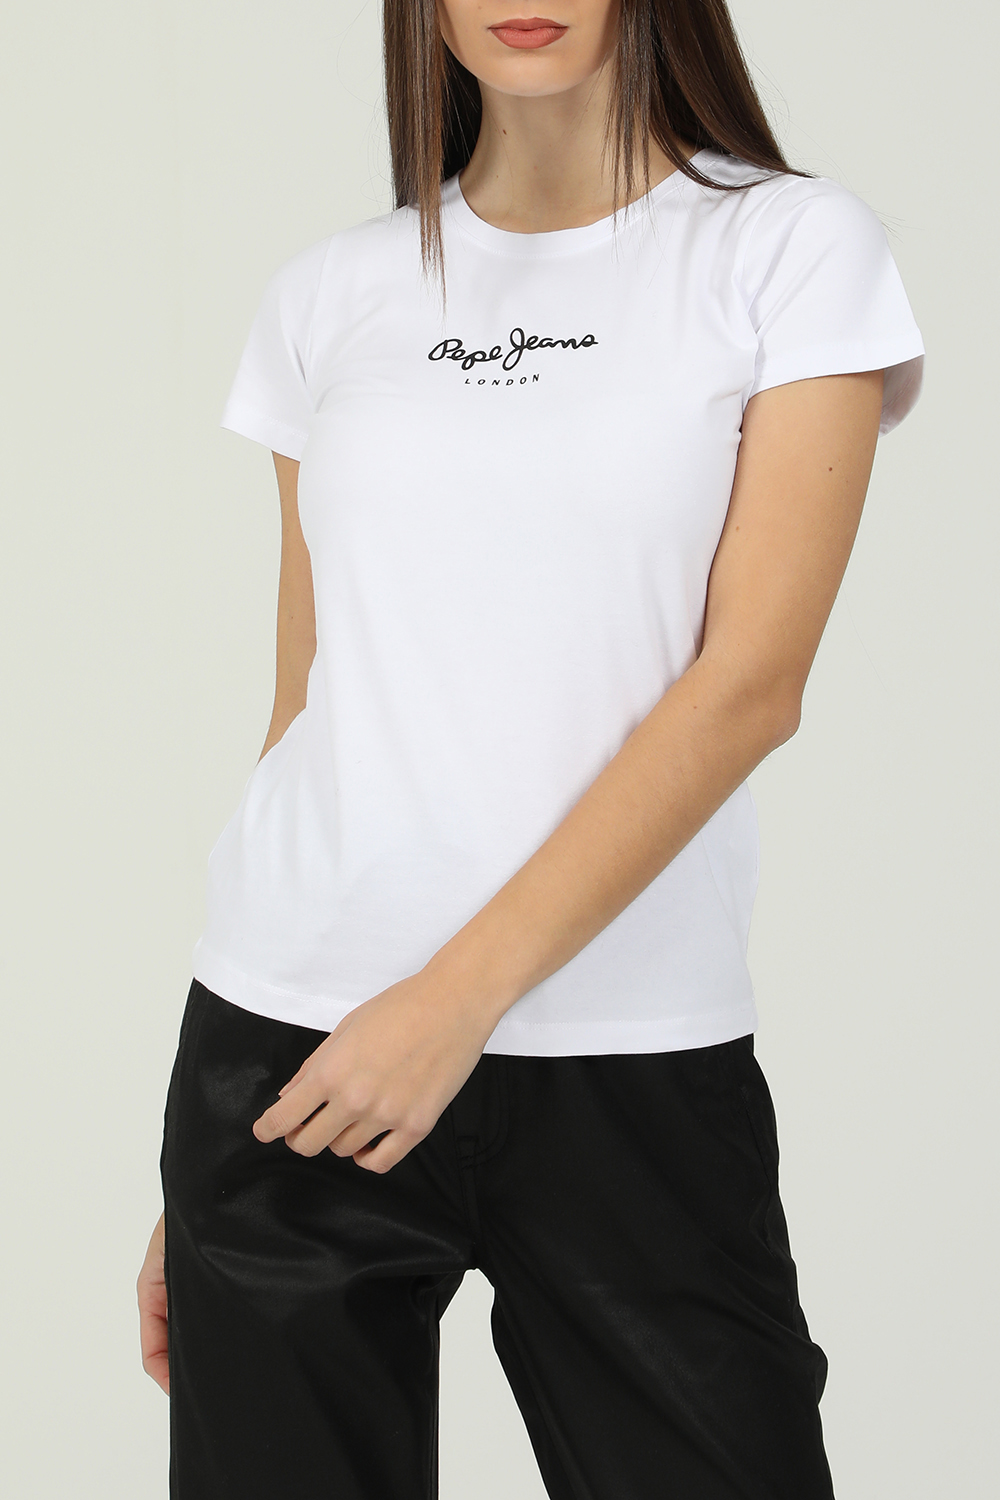 Γυναικεία/Ρούχα/Μπλούζες/Κοντομάνικες PEPE JEANS - Γυναικεία κοντομάνικη μπλούζα PEPE JEANS NEW VIRGINIA λευκή